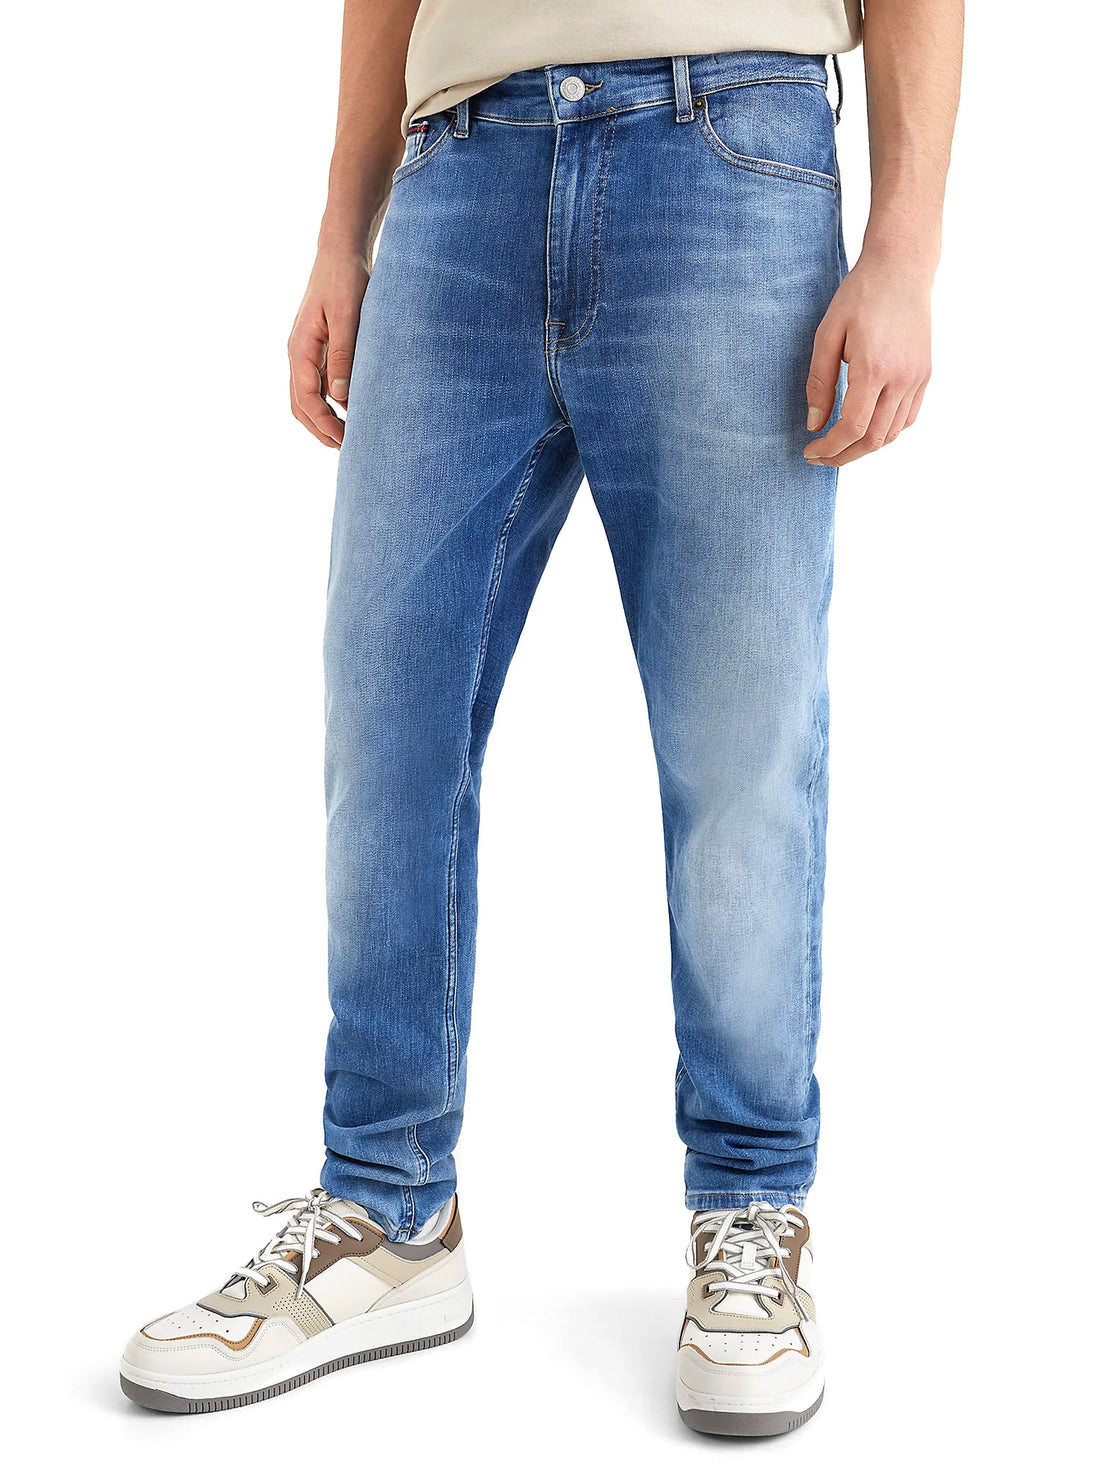 Jeans Blu Tommy Jeans